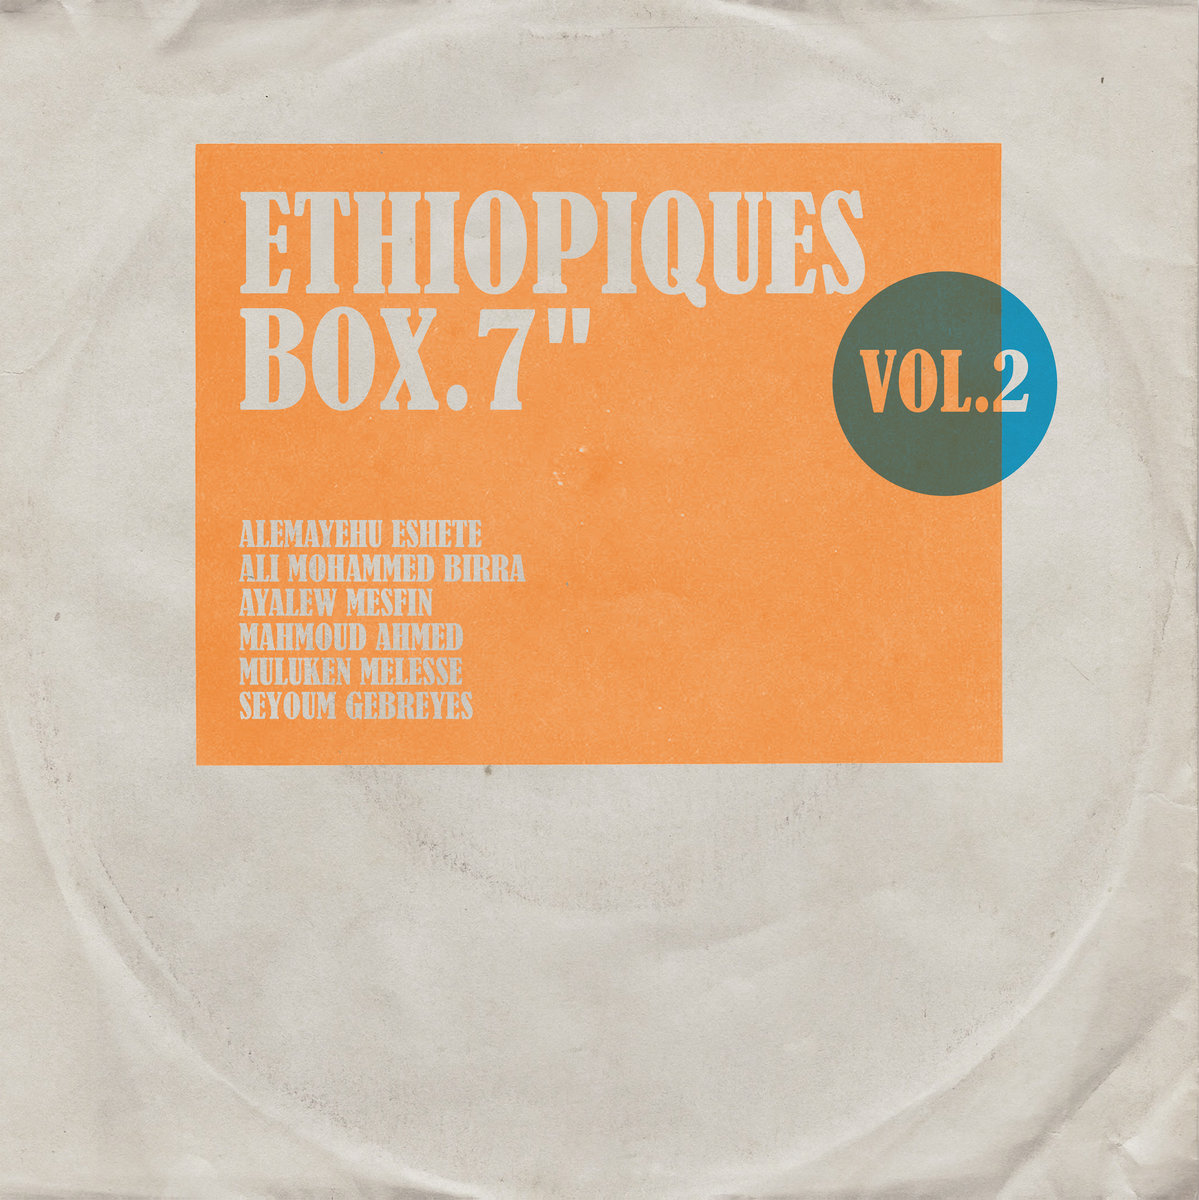 ETHIOPIQUES BOX VOL 2